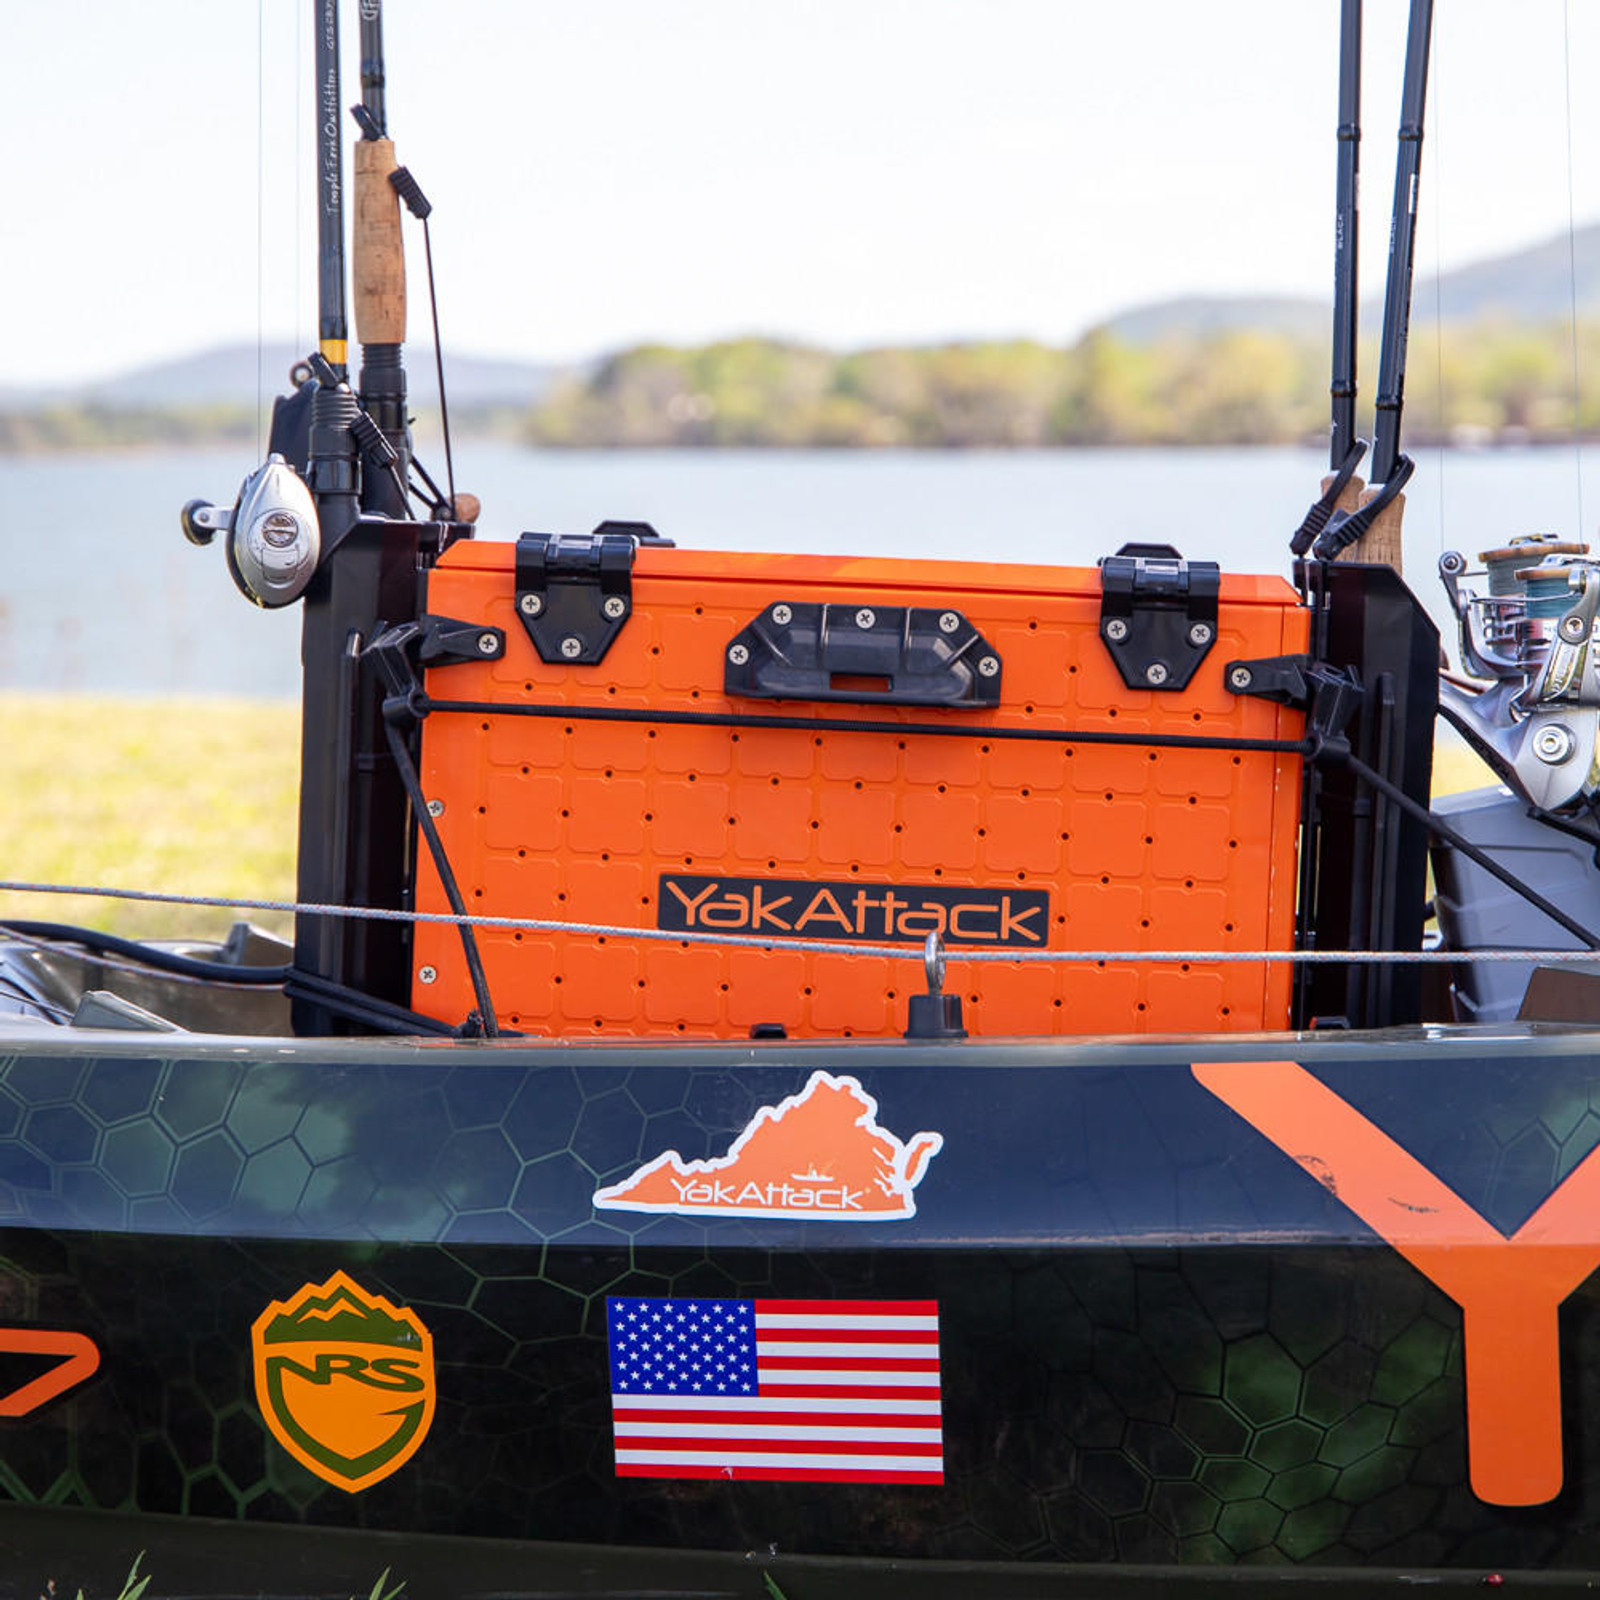  BlackPak Pro Kayak Fishing Crate - 13" x 16", Orange 